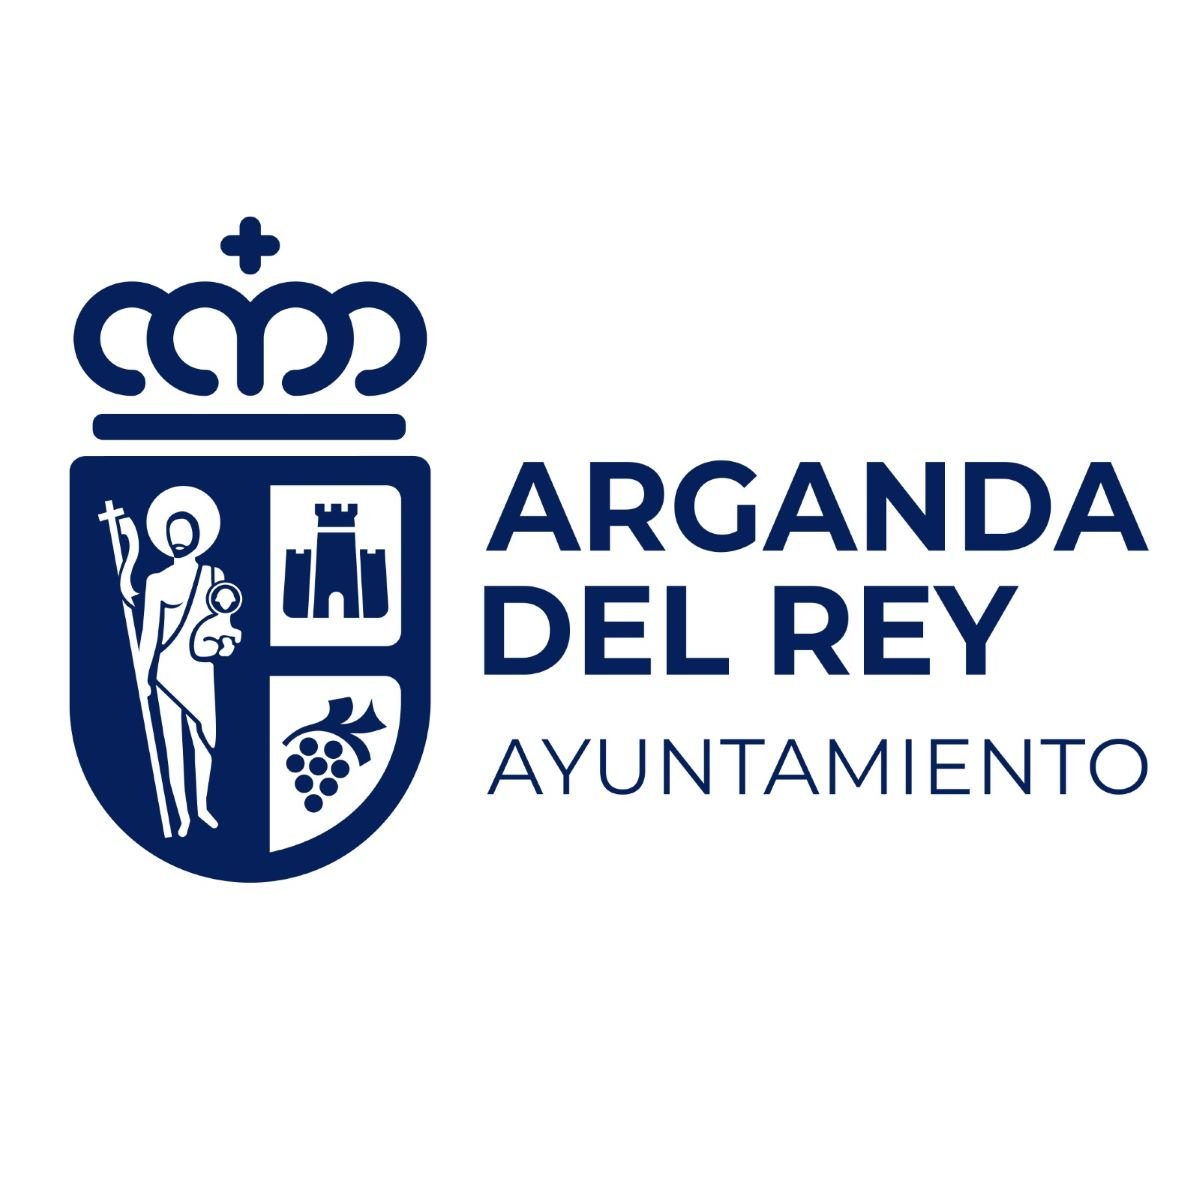 El timbrado de la Corona Real española vuelve al escudo de Arganda del Rey